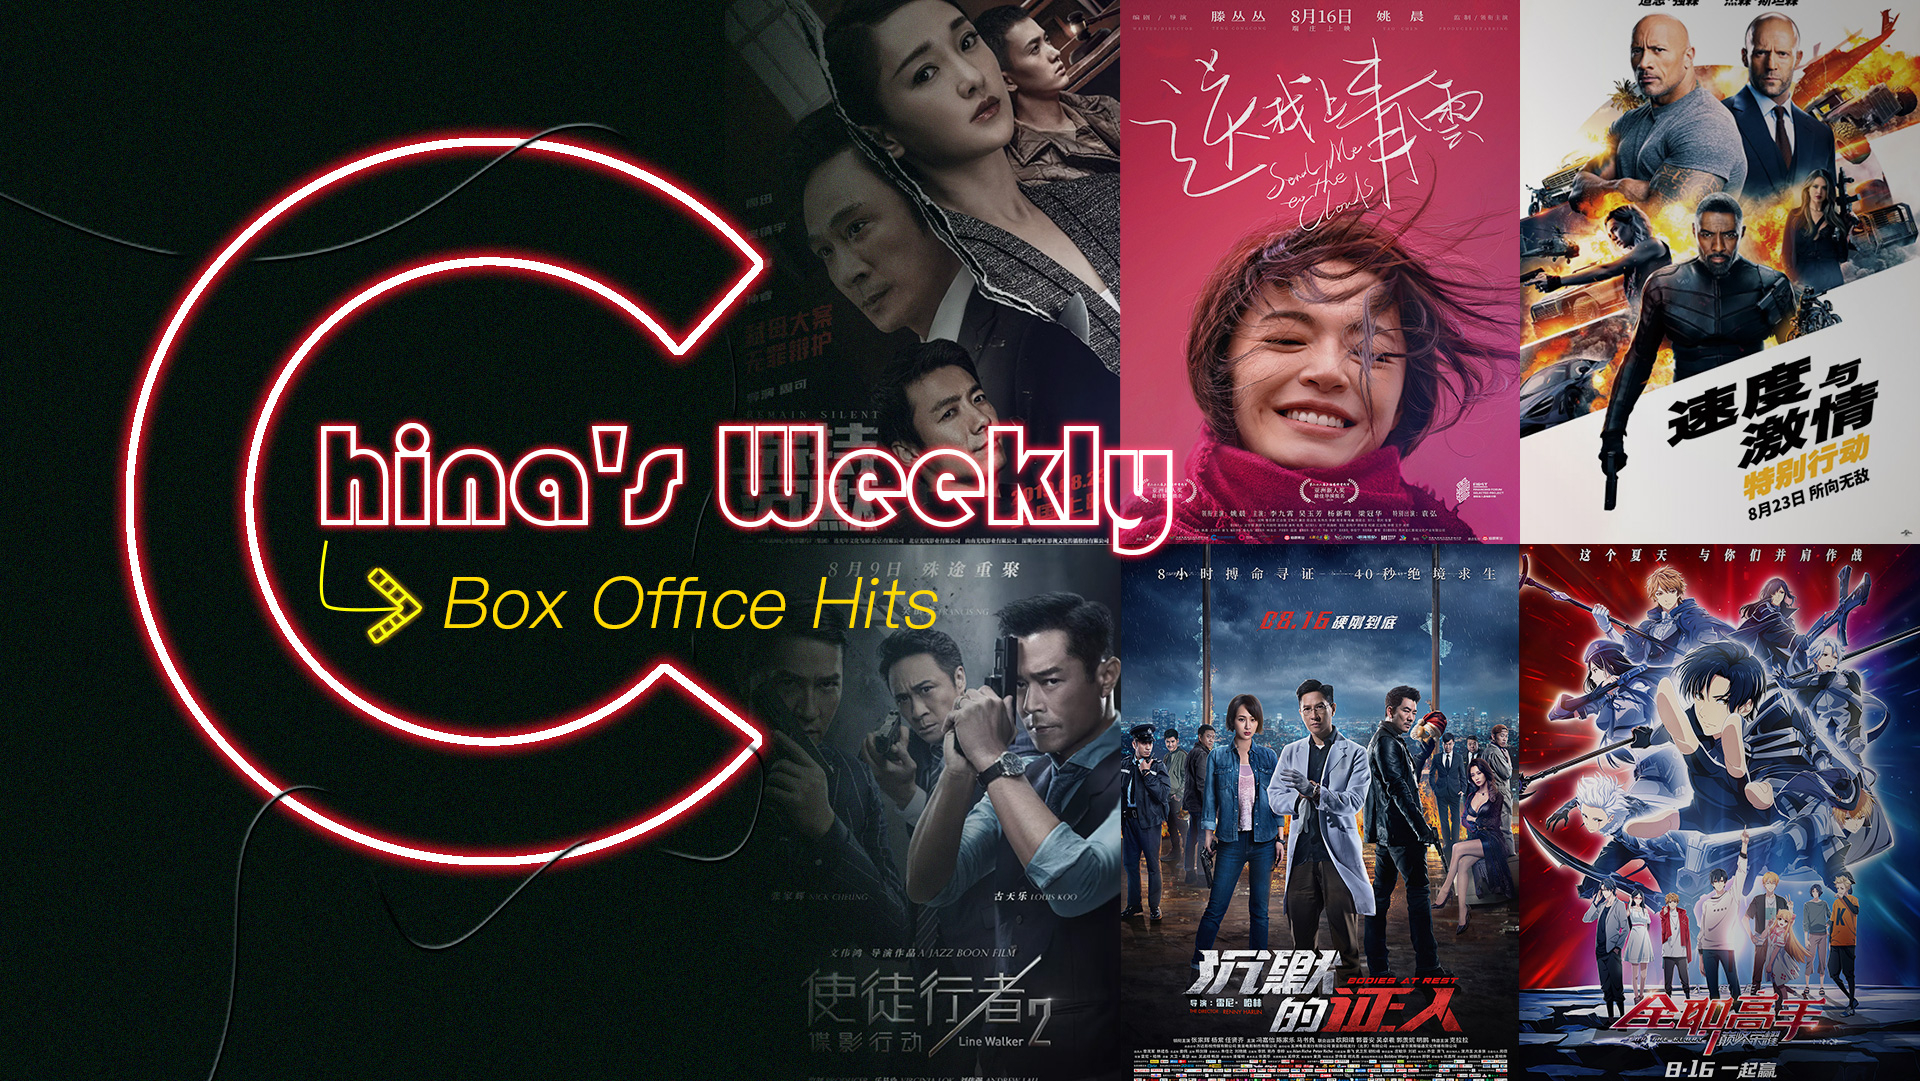 China's Weekly Box Office Hits